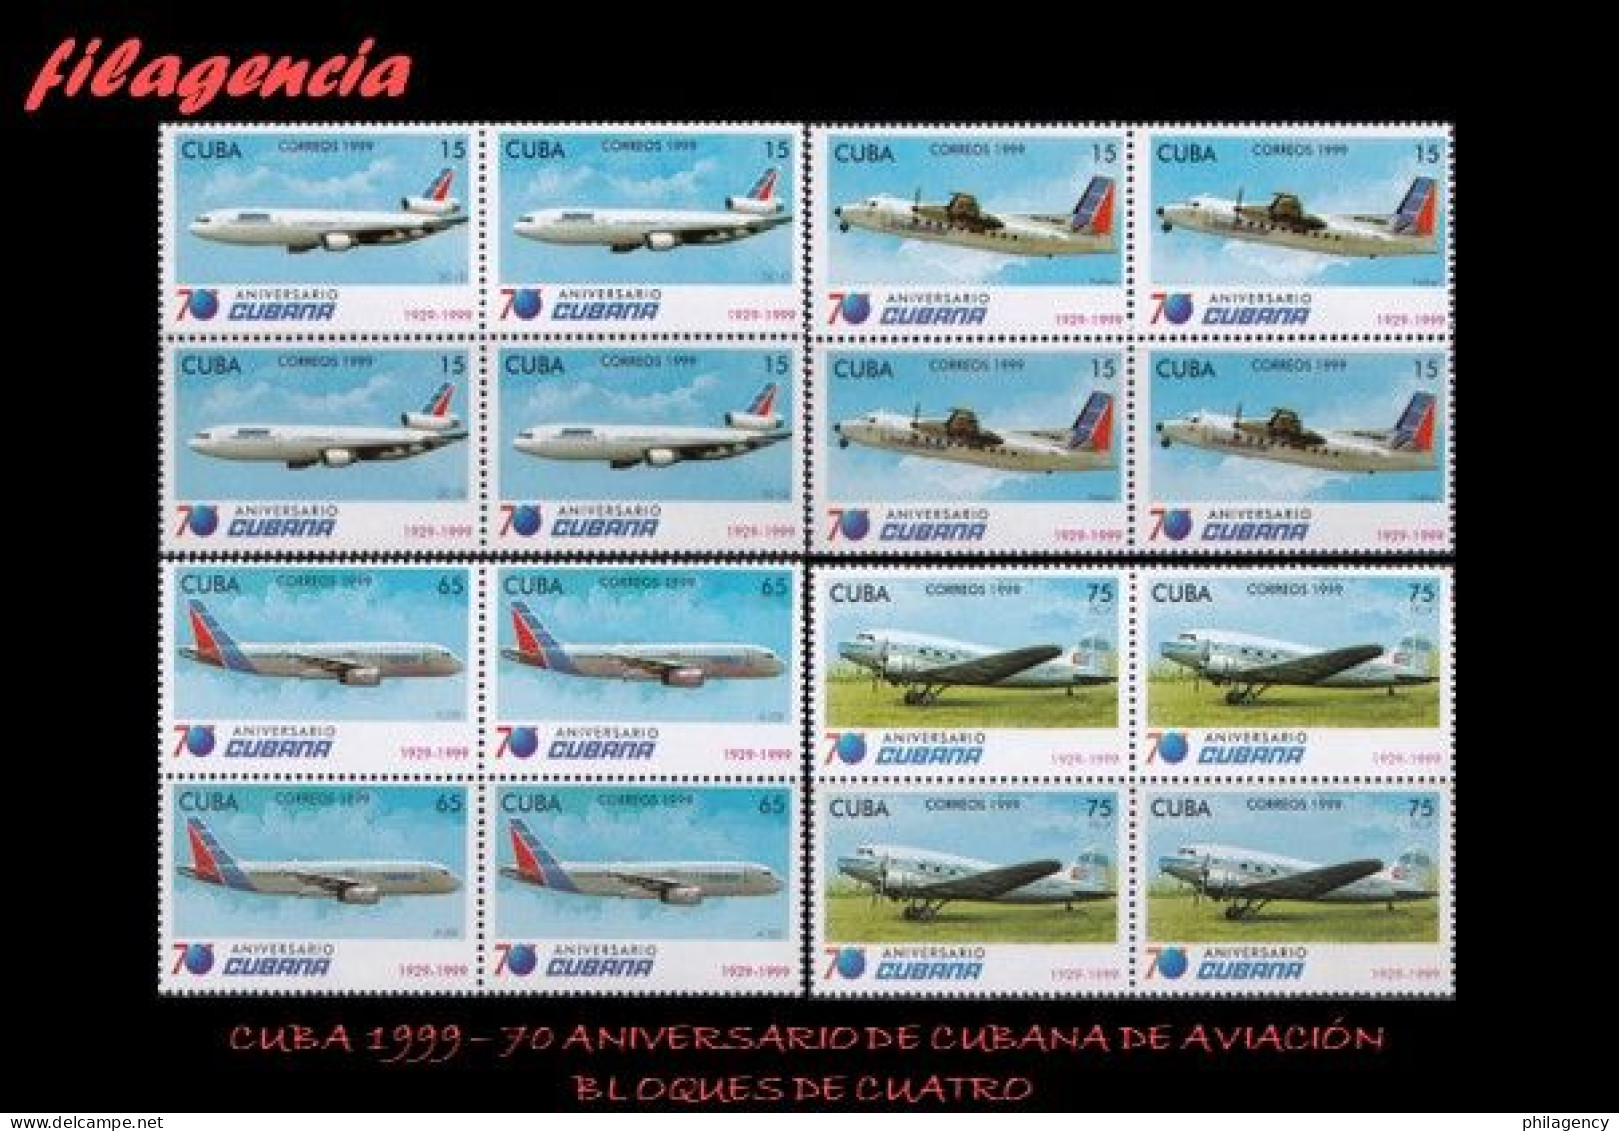 CUBA. BLOQUES DE CUATRO. 1999-23 70 ANIVERSARIO DE CUBANA DE AVIACIÓN - Nuovi